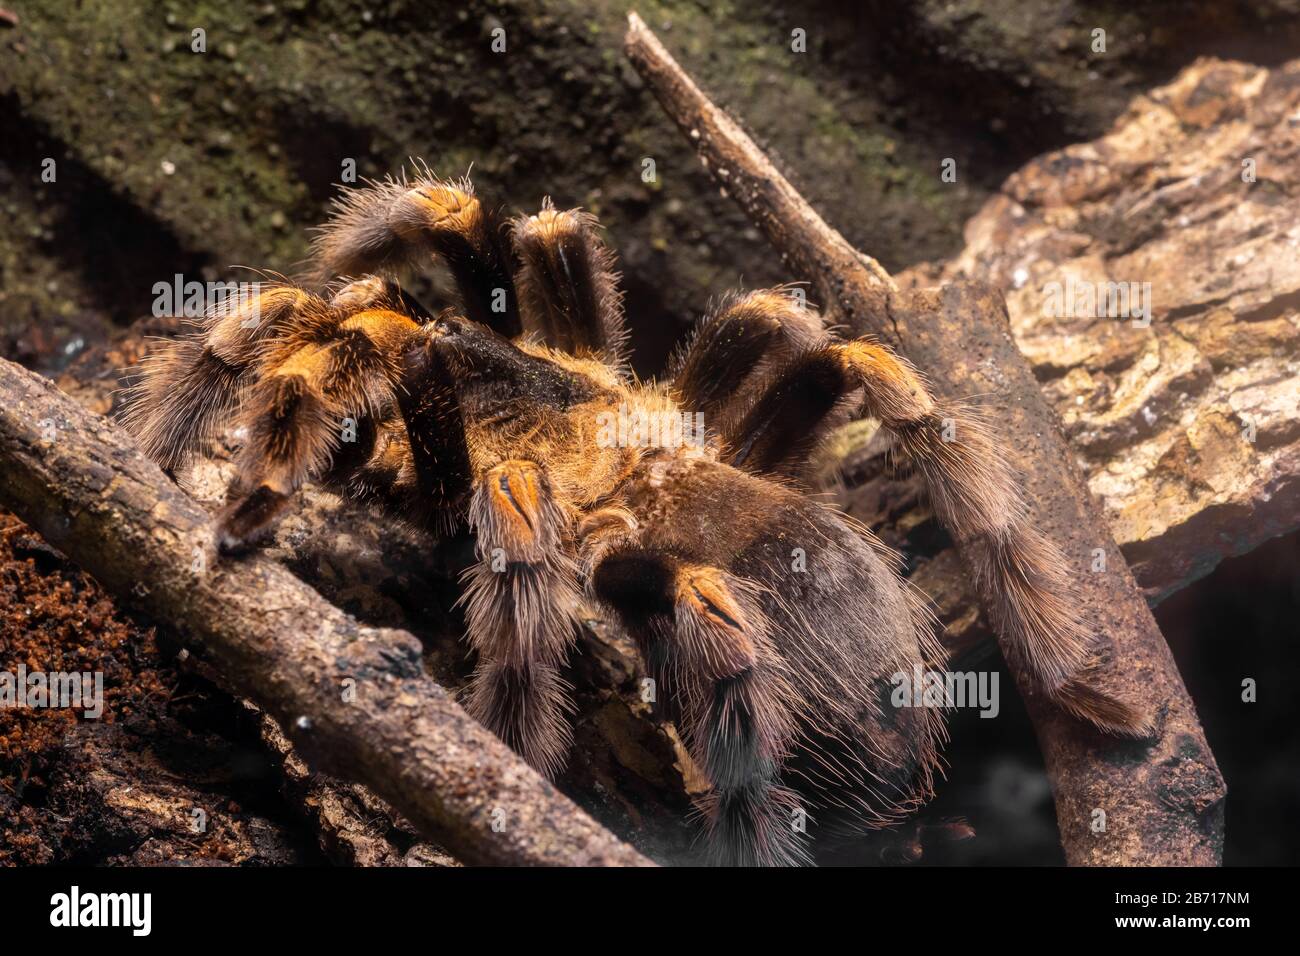 Close up of a Mexican redknee tarantula (brachypelma harmori) Stock Photo